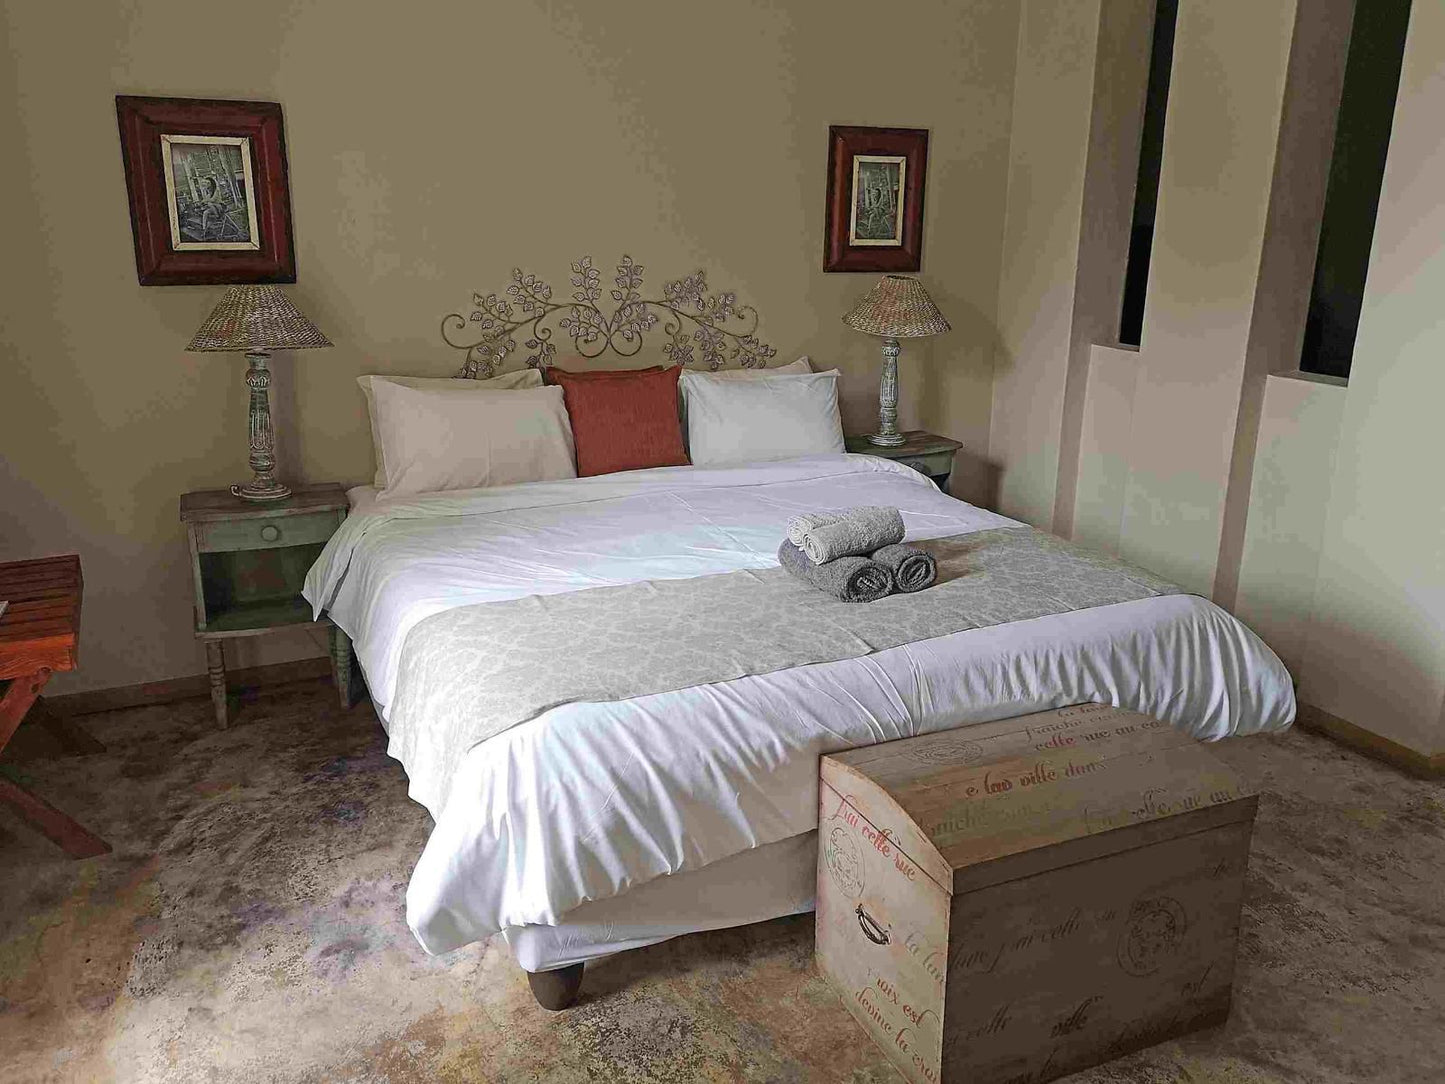 Bosheuvel Country Estate Muldersdrift Gauteng South Africa Bedroom